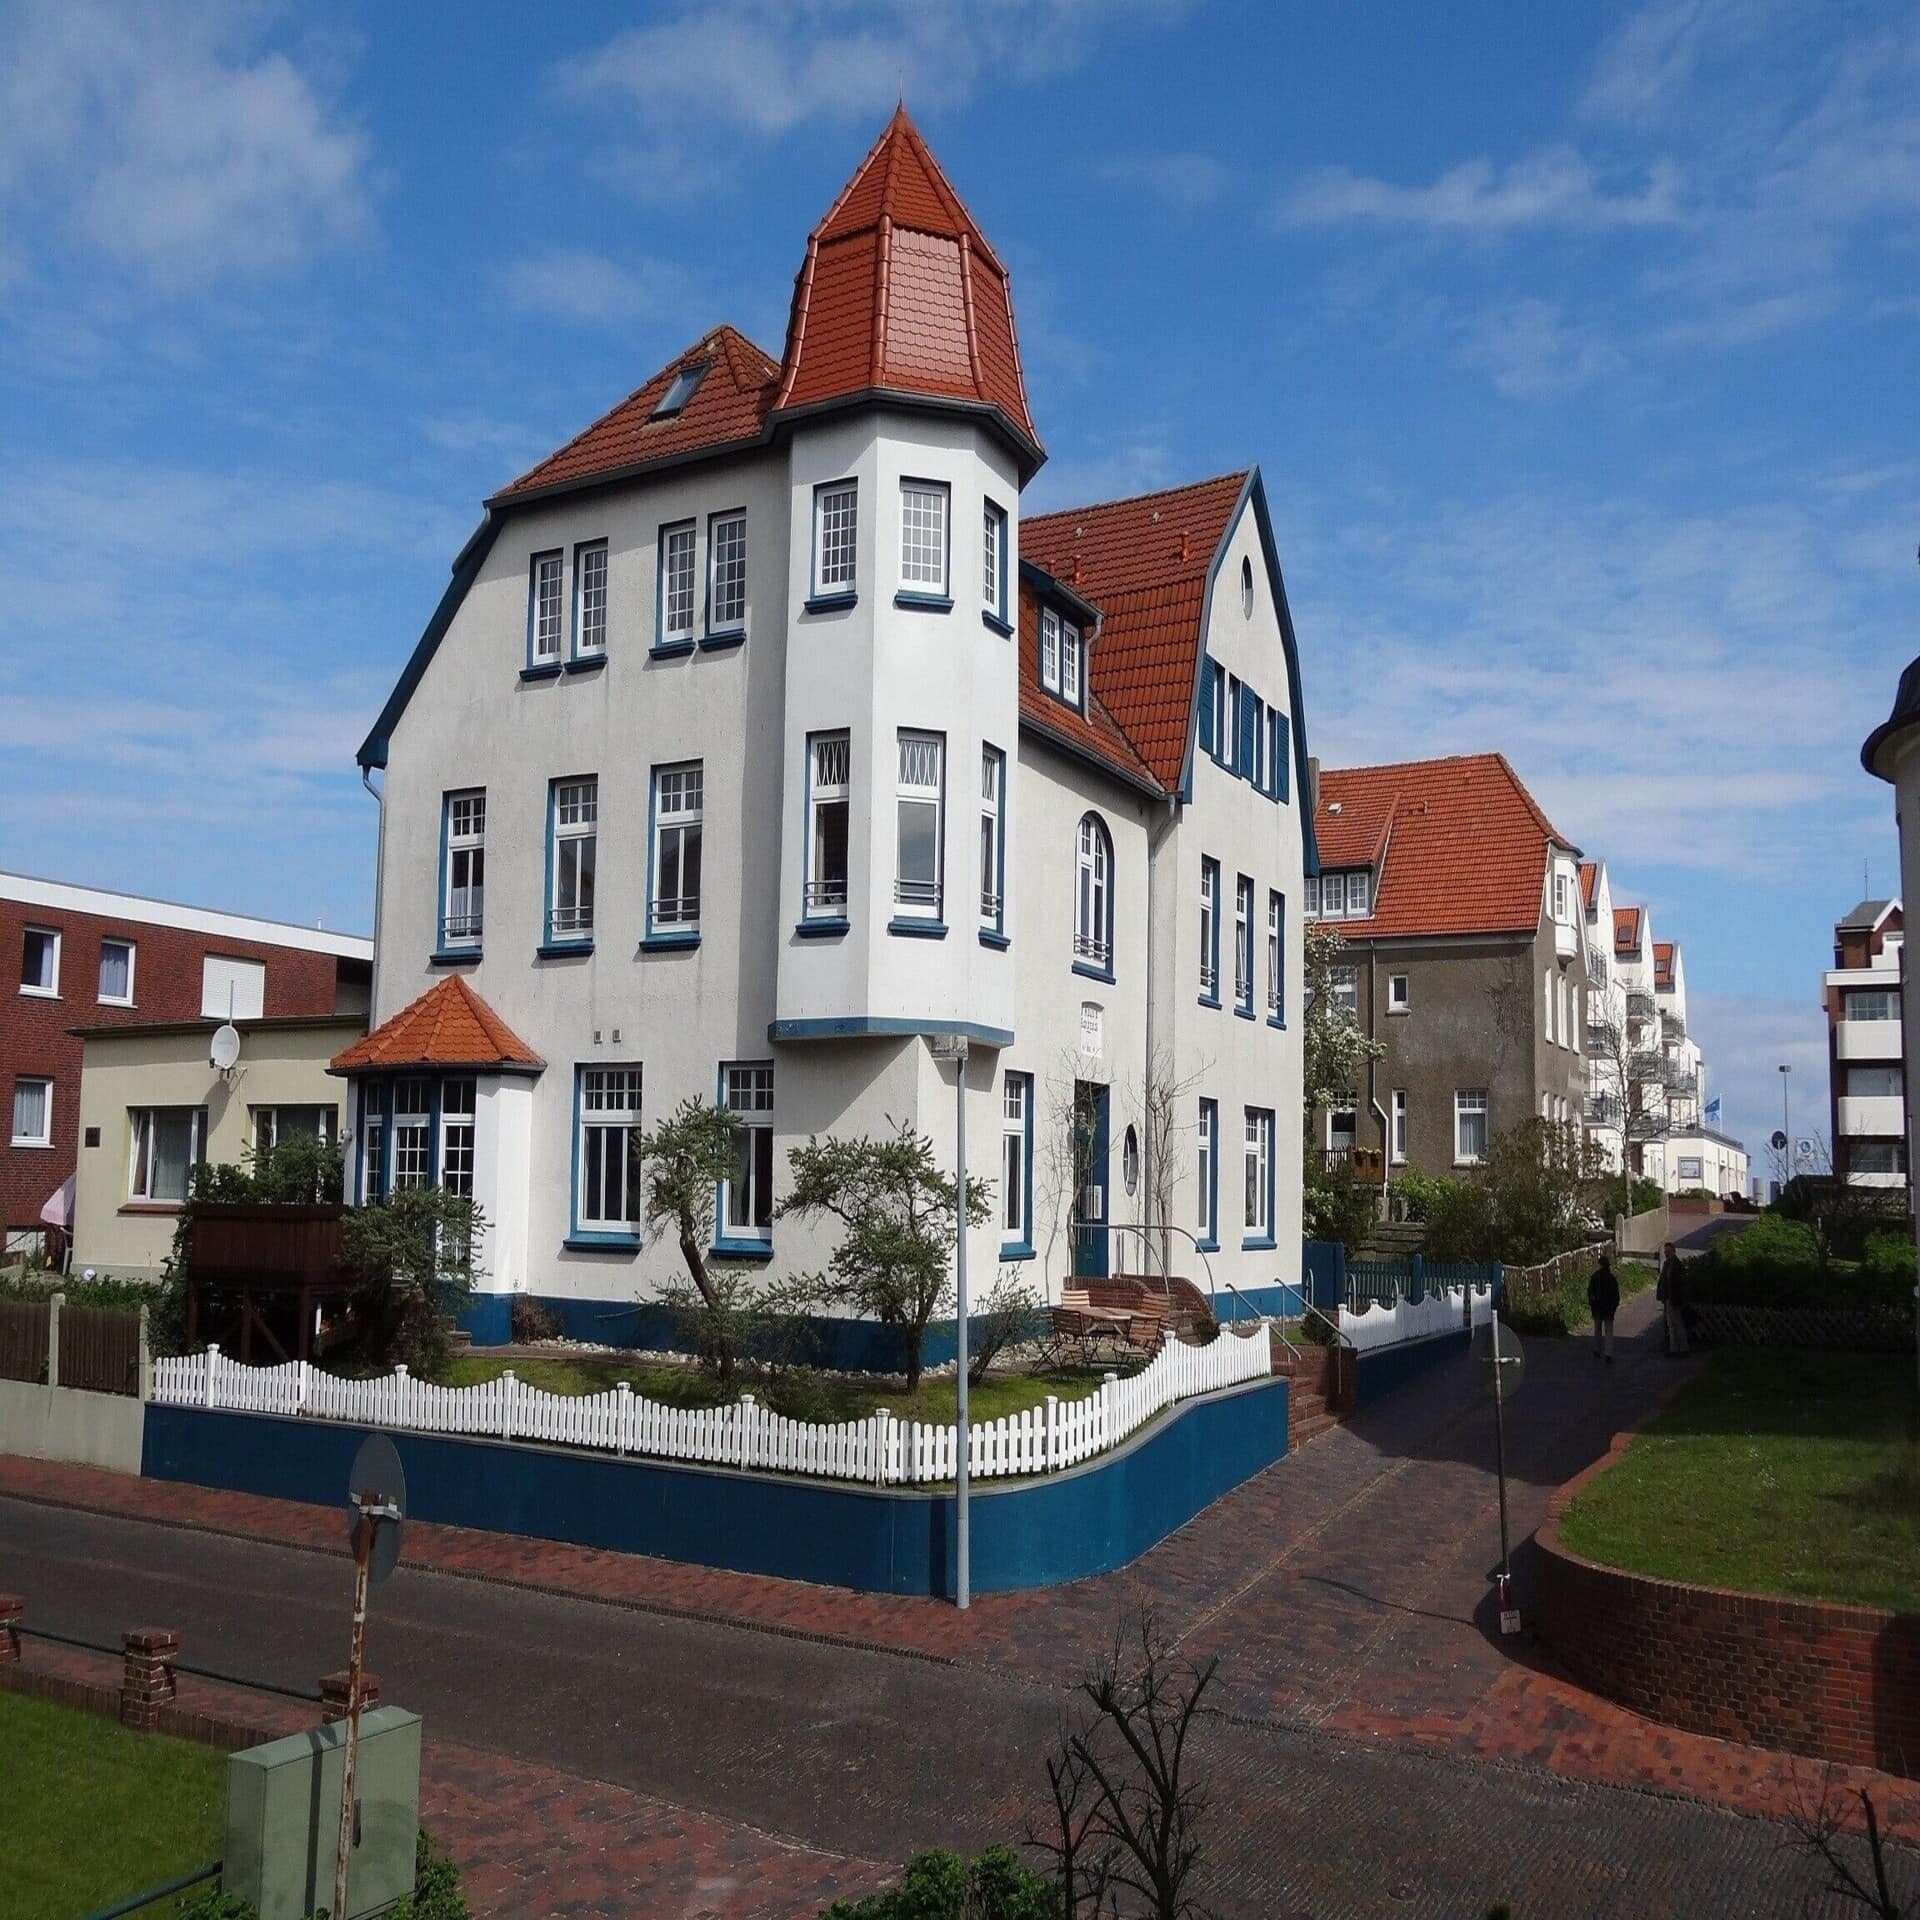 Weißes Haus mit rotem Dach und blauen Verzierungen in einem Ort auf Wangerooge.